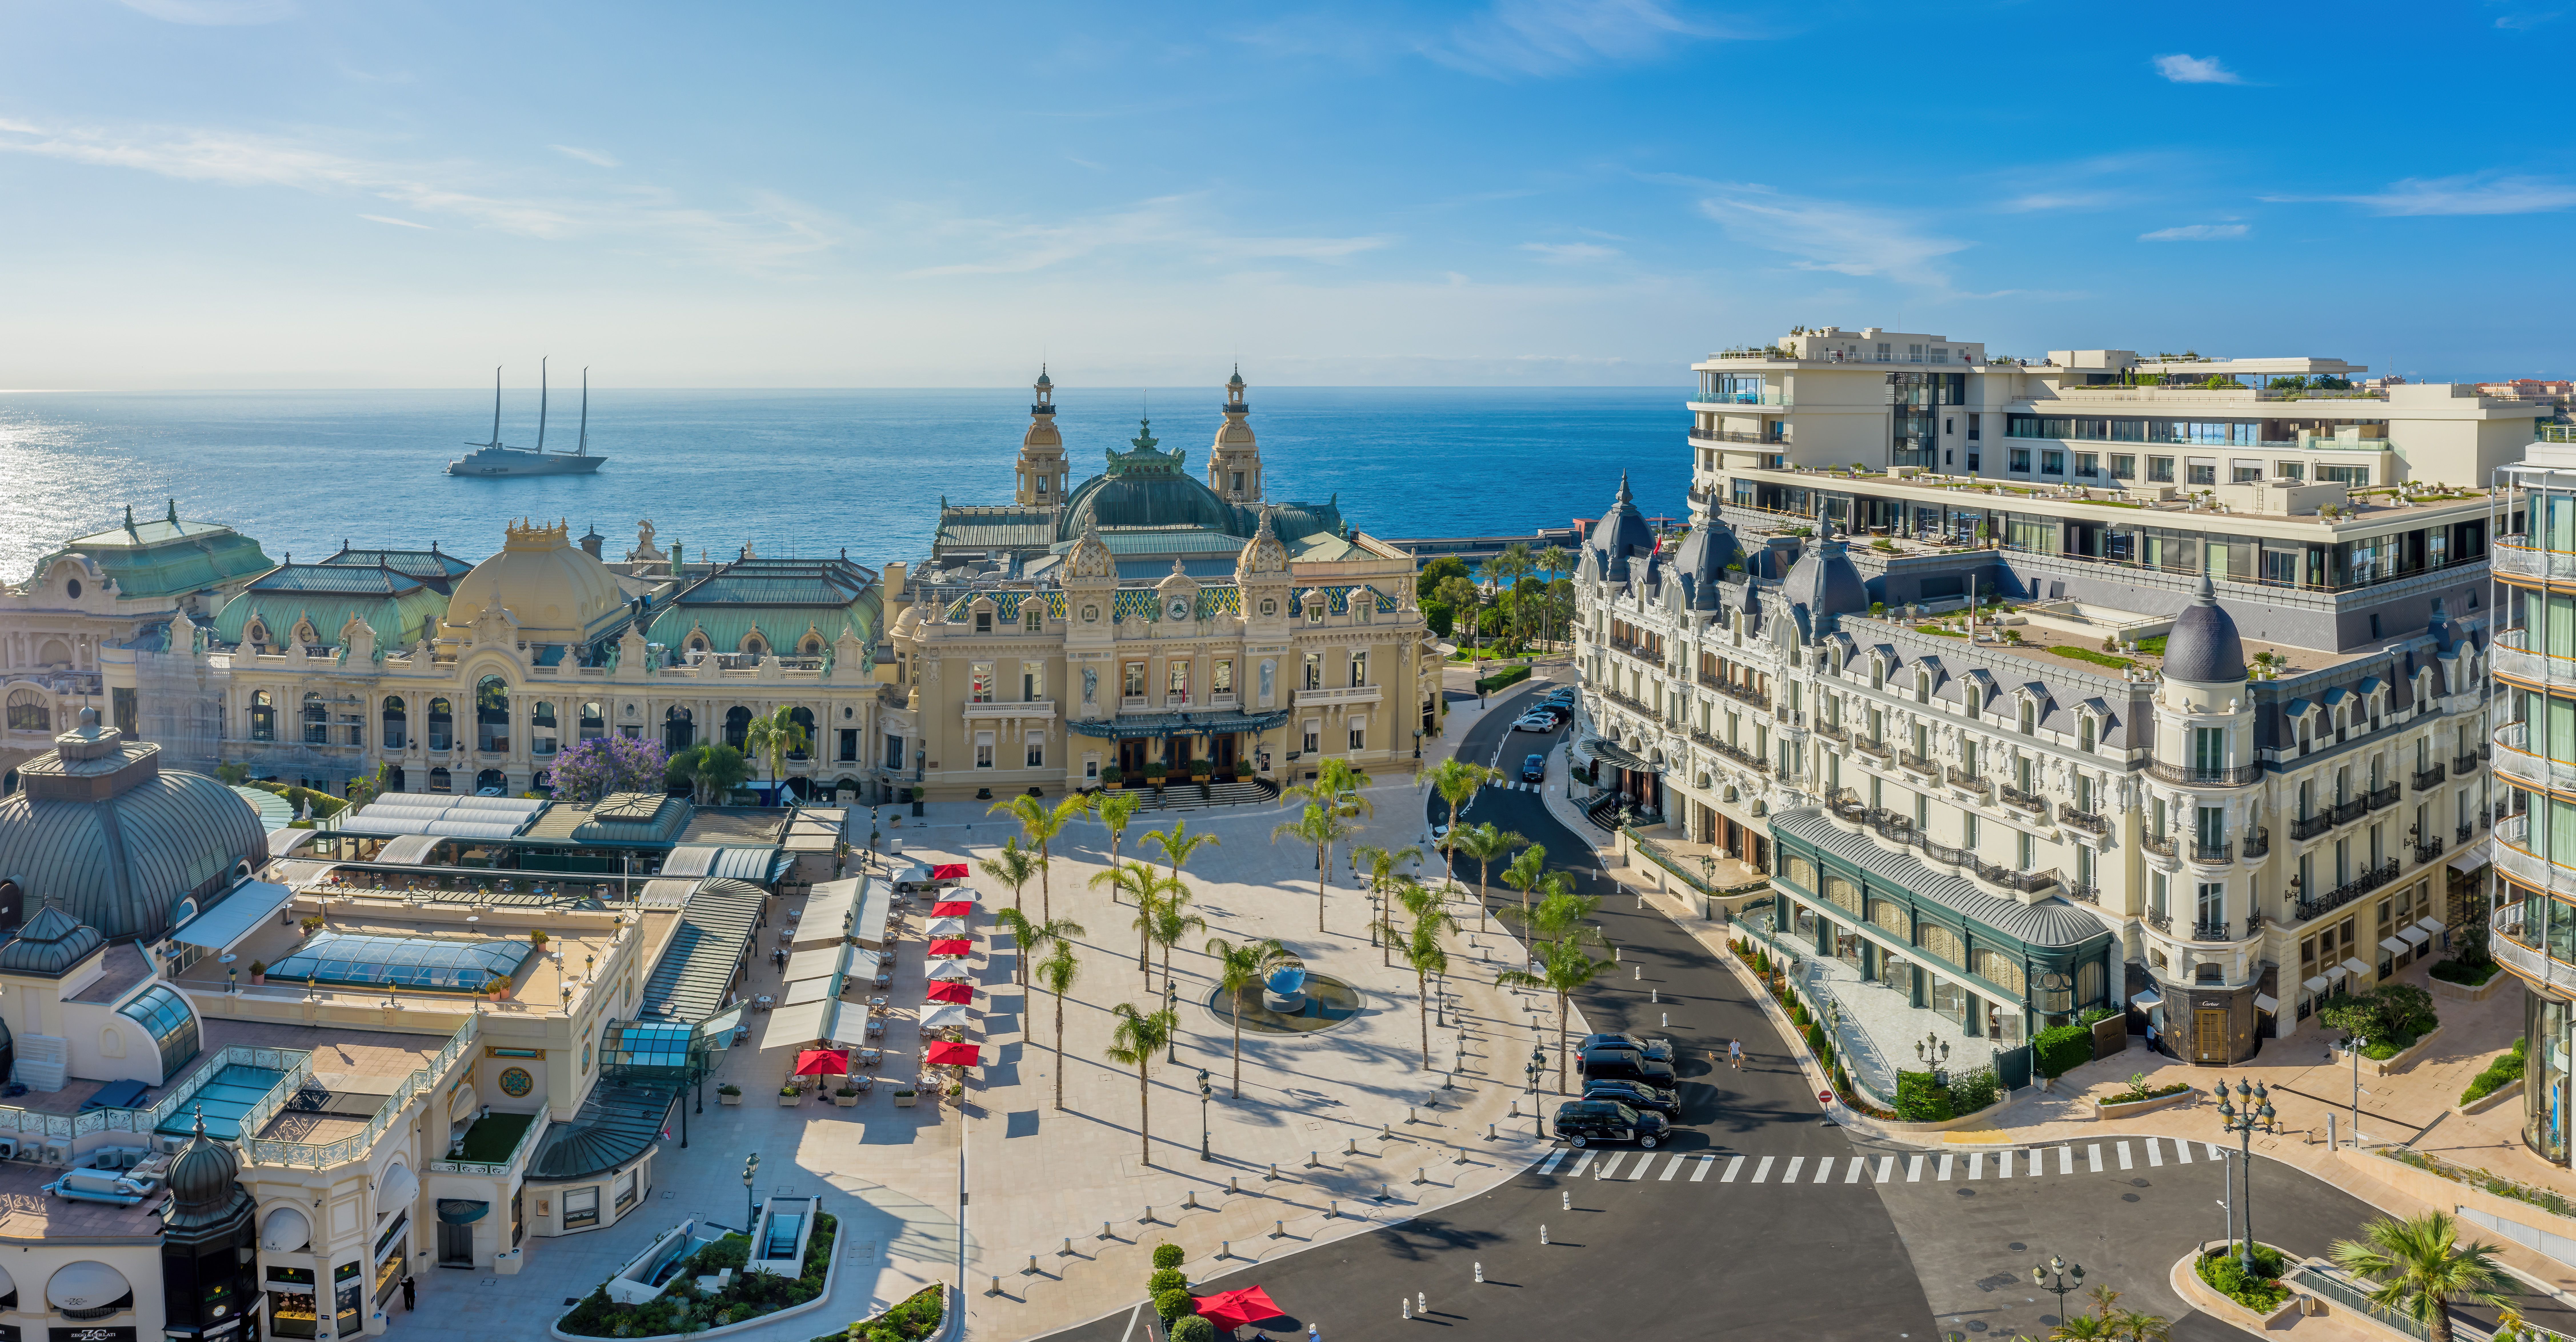 Louis Vuitton in Monaco  Monte-Carlo Société des Bains de Mer